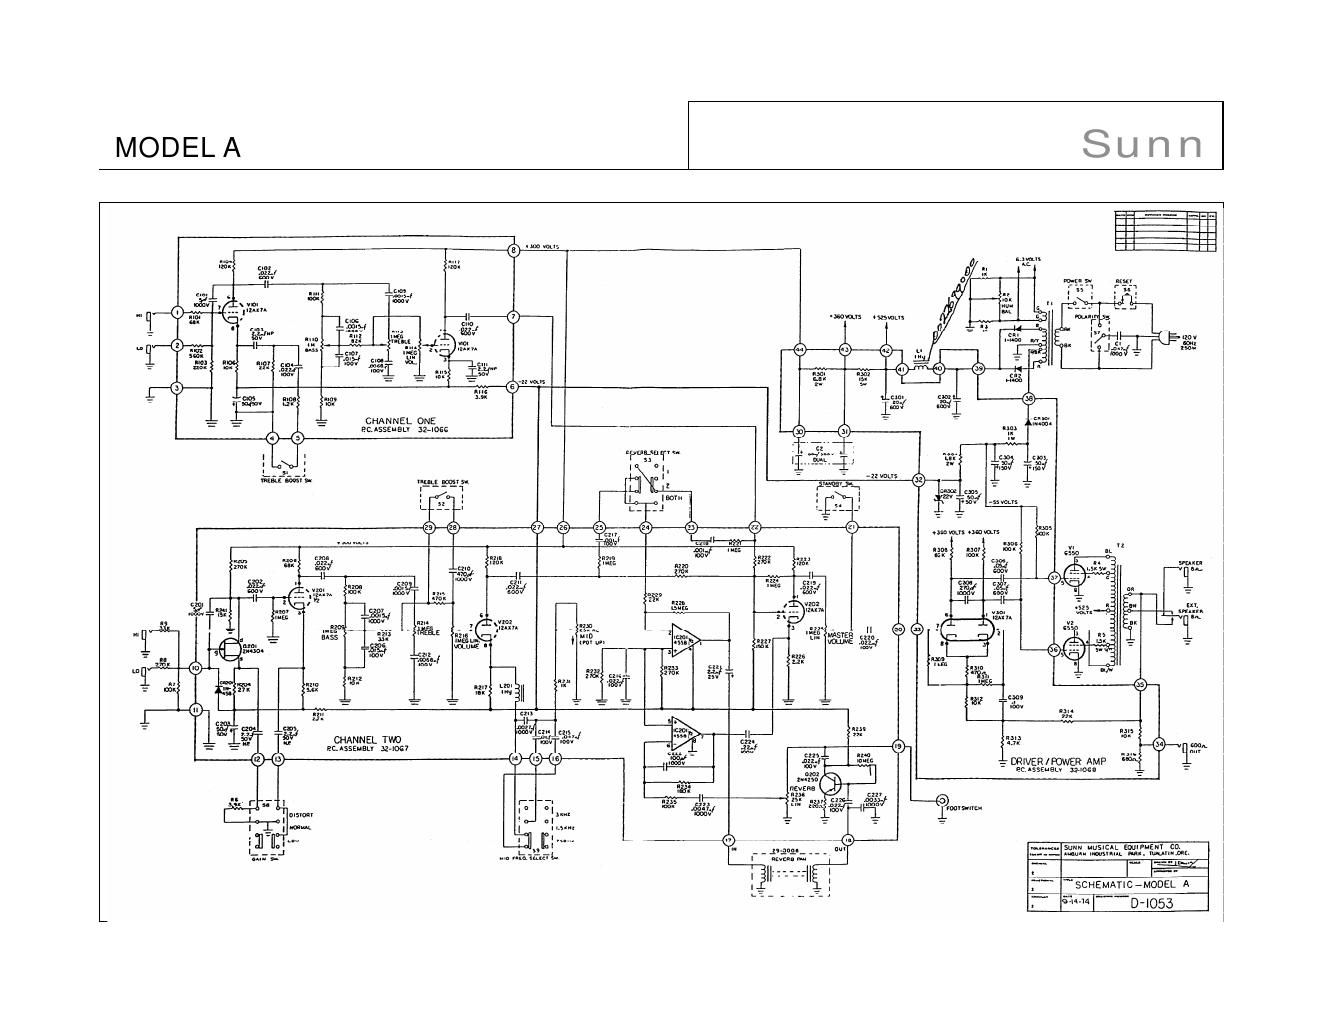 sunn model a schematic